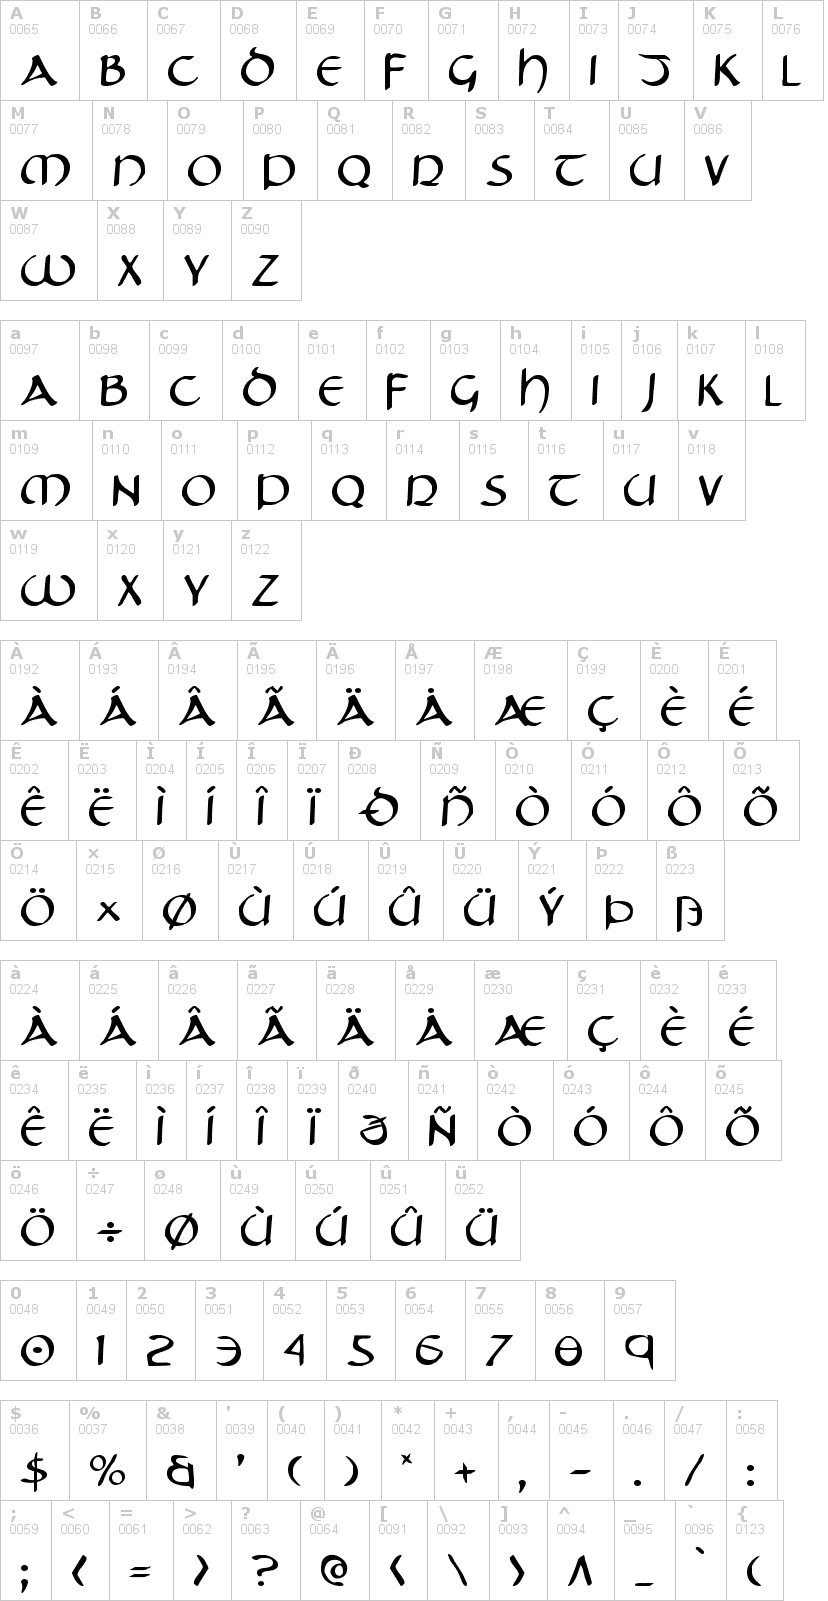 Lettere dell'alfabeto del font tristram con le quali è possibile realizzare adesivi prespaziati